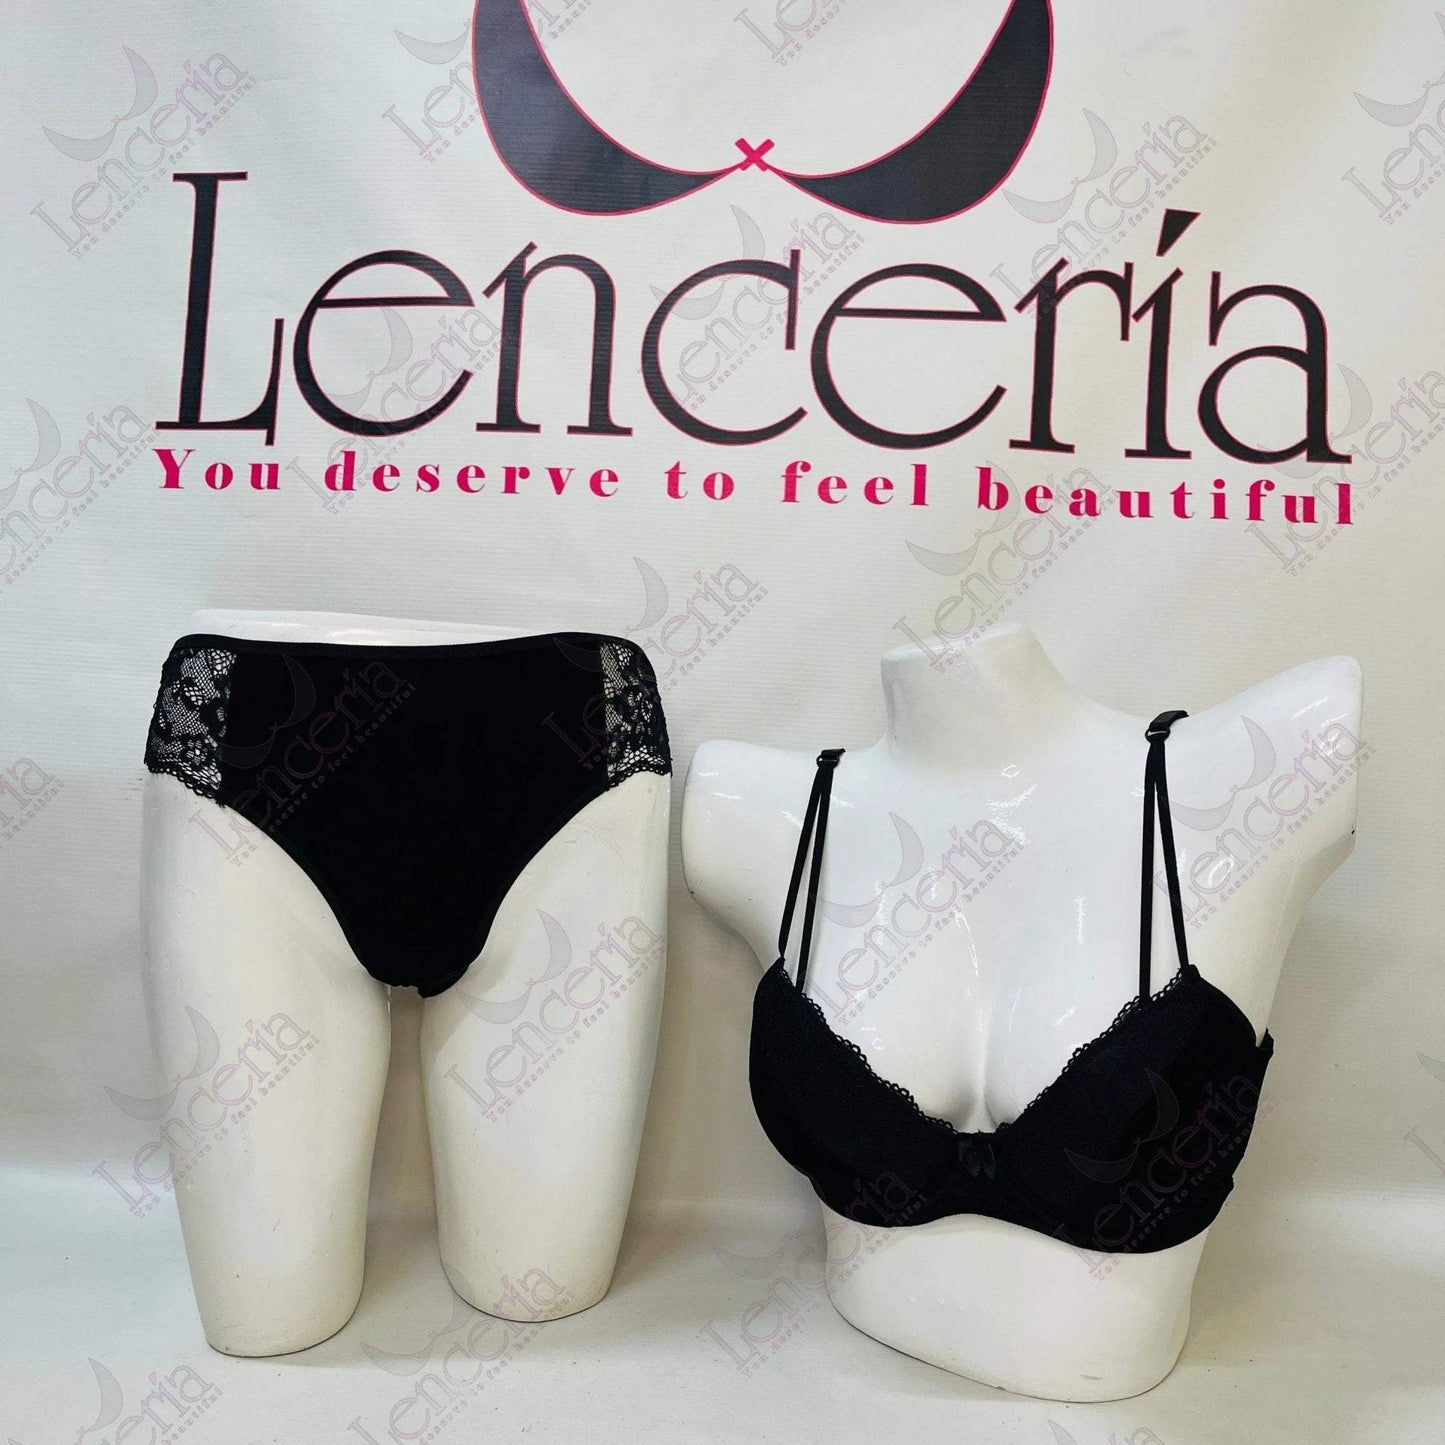 Cheriee nocte velvet & embroidered lingerie set - extremely beautiful (c73) - Lenceria-lingerie.pk